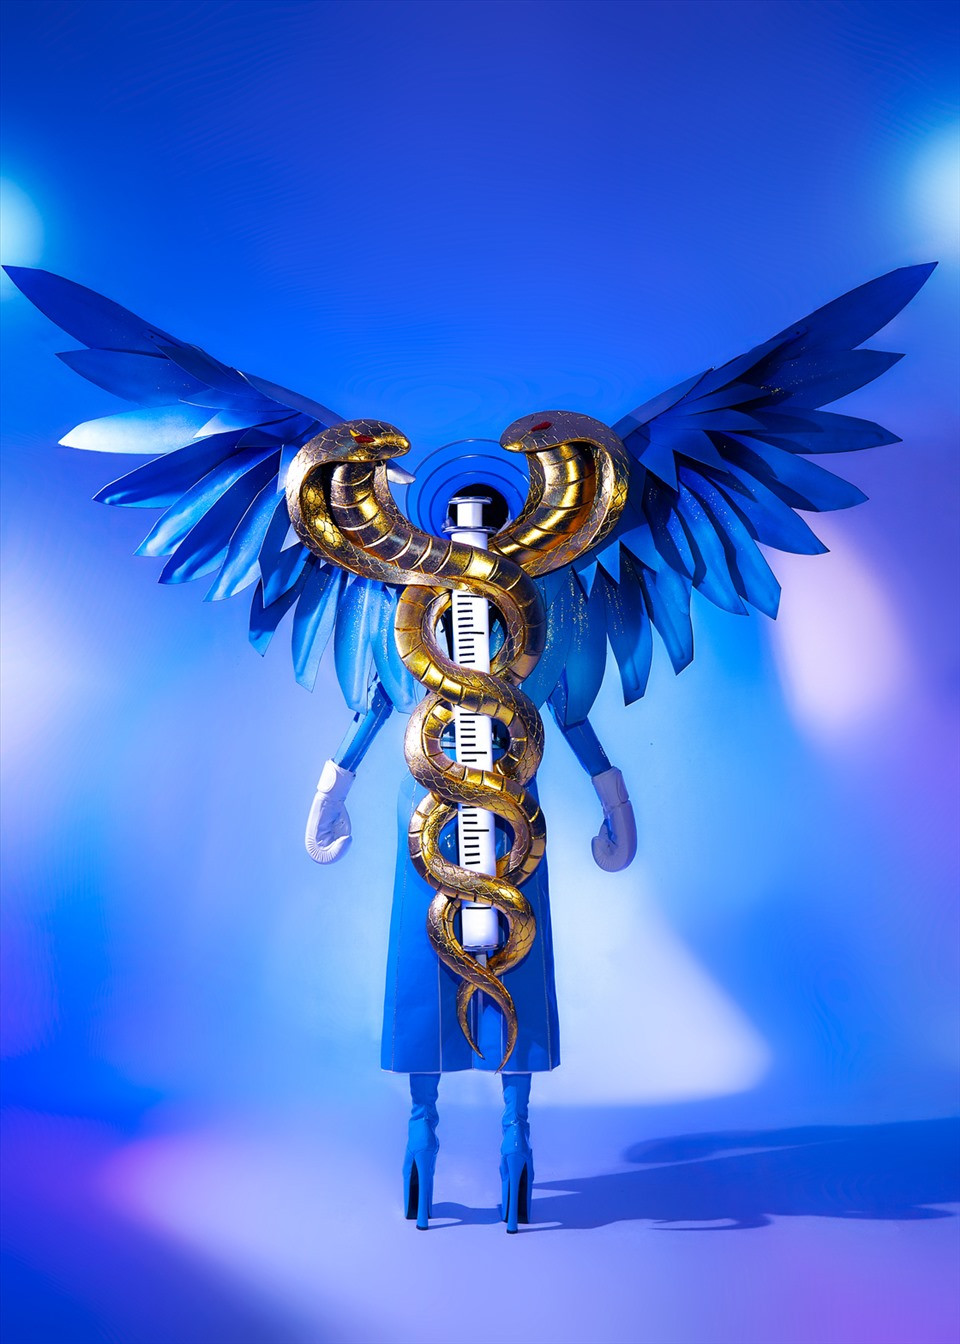 Phần cách điệu đôi rắn mạ vàng và điêu khắc thủ công quấn quanh ống tiêm vaccine cùng với đôi cánh sơn hiệu ứng ombre ánh kim, tạo nên hình ảnh biểu trưng của ngành y.